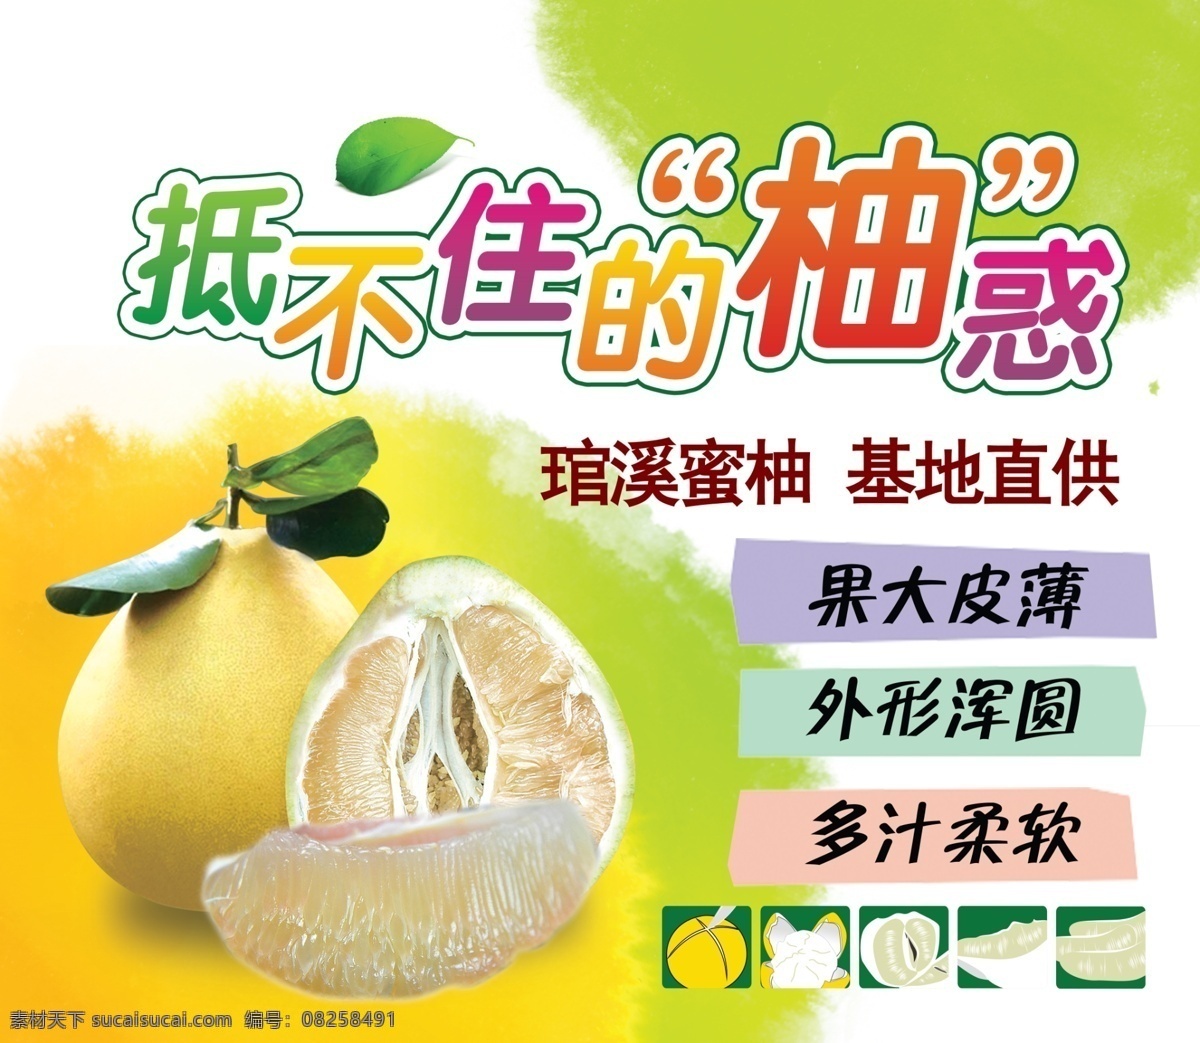 抵不住的柚惑 柚子 琯溪蜜柚 果大皮薄 清新 柚子肉 吃柚子的方法 广告设计模板 源文件